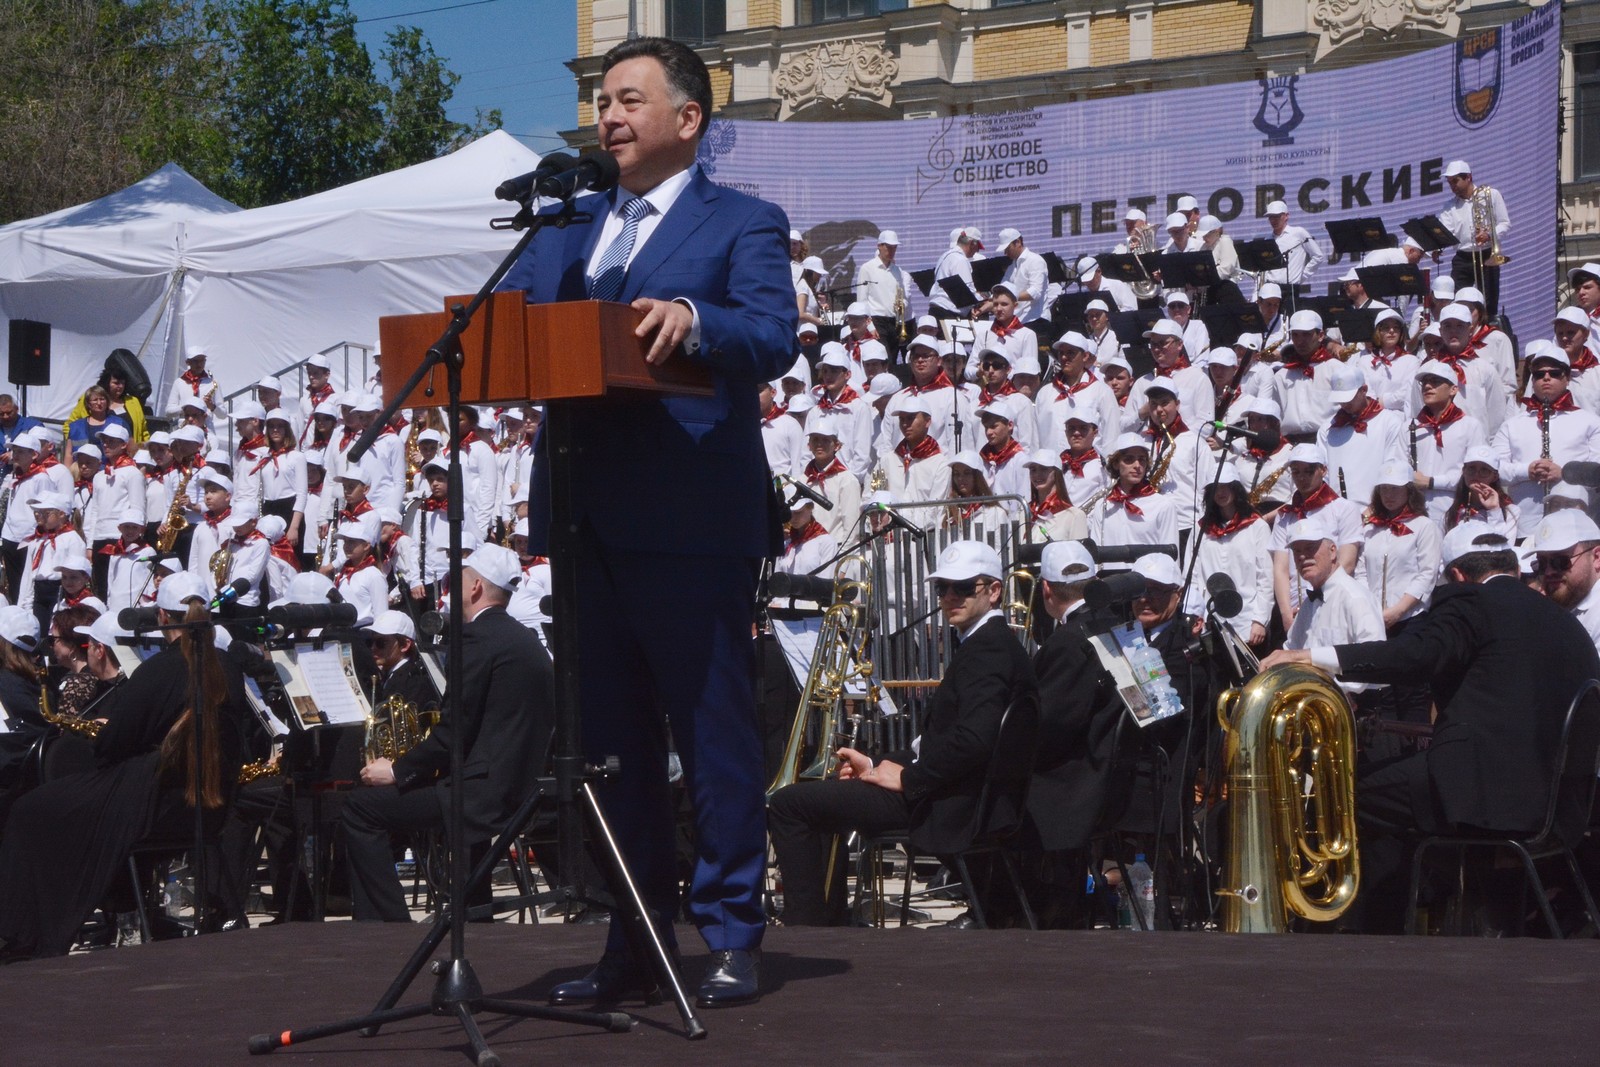 В день 350-летия со дня рождения Петра I фестиваль «Петровские музыкальные Ассамблеи» состоялся в Саратове